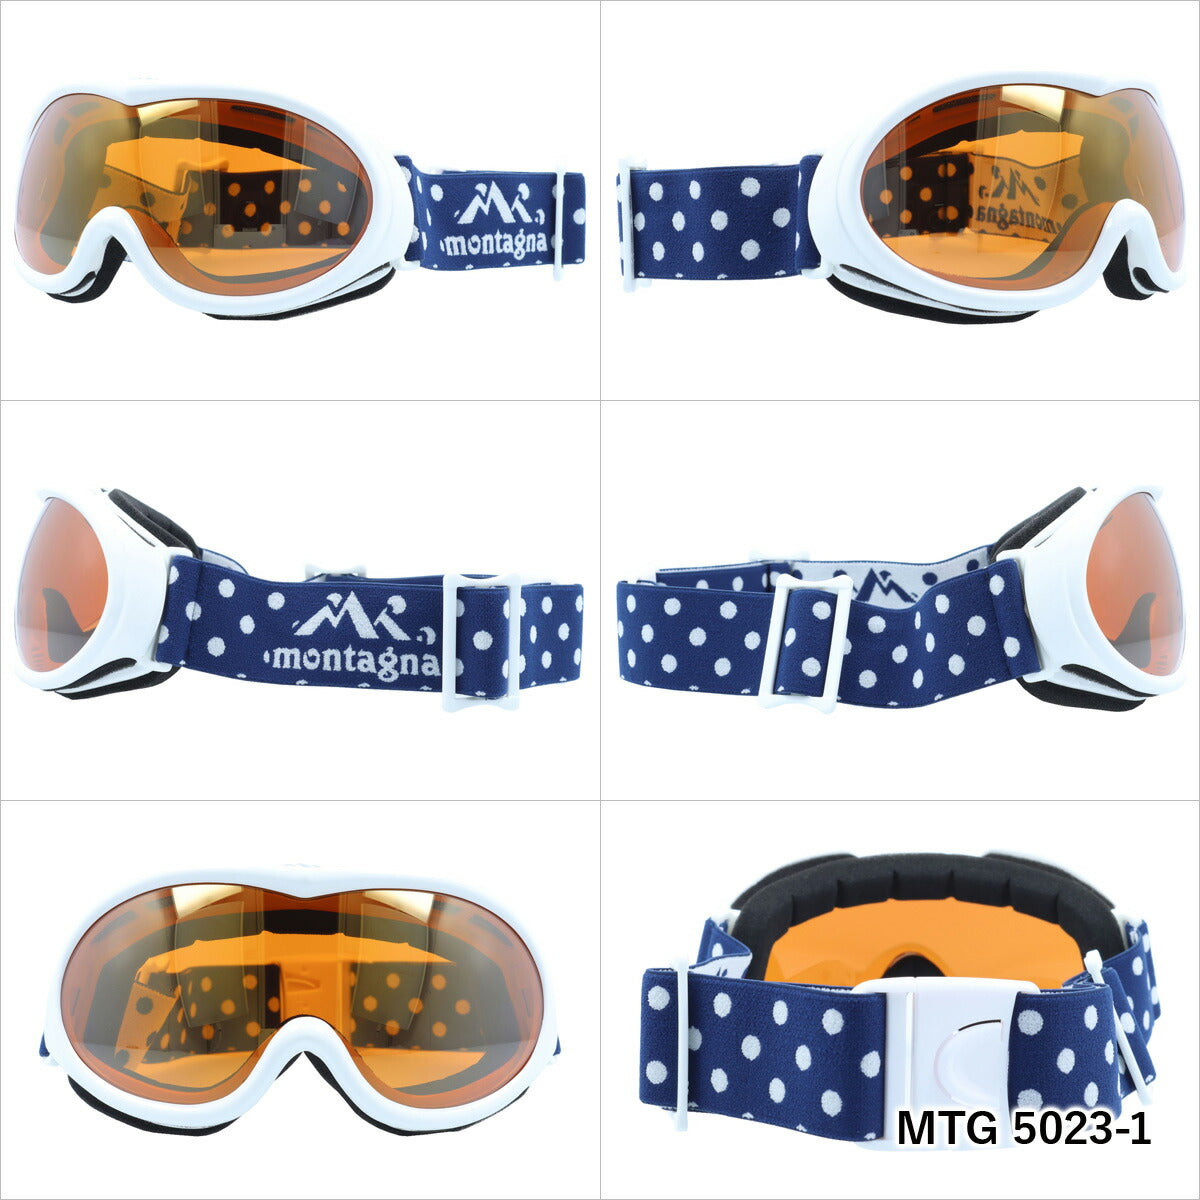 ミラーレンズ スノーゴーグル スキー スノーボード スノボ 球面レンズ フレームあり メンズ レディース ウィンタースポーツ 曇り防止 曇り止め 誕生日 プレゼント montagna モンターニャ MTG 5023 男性 女性